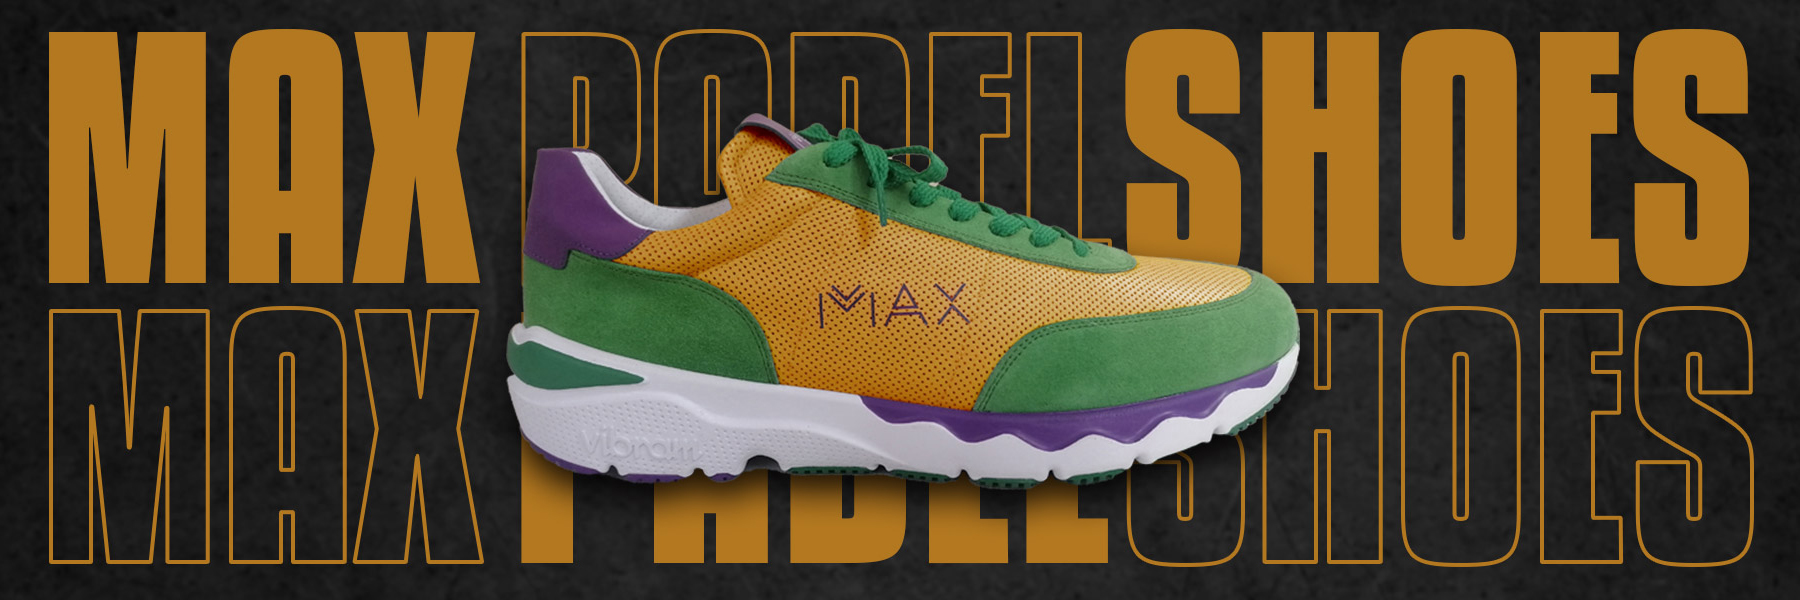 Max Padel Shoes: eccellenza Italiana